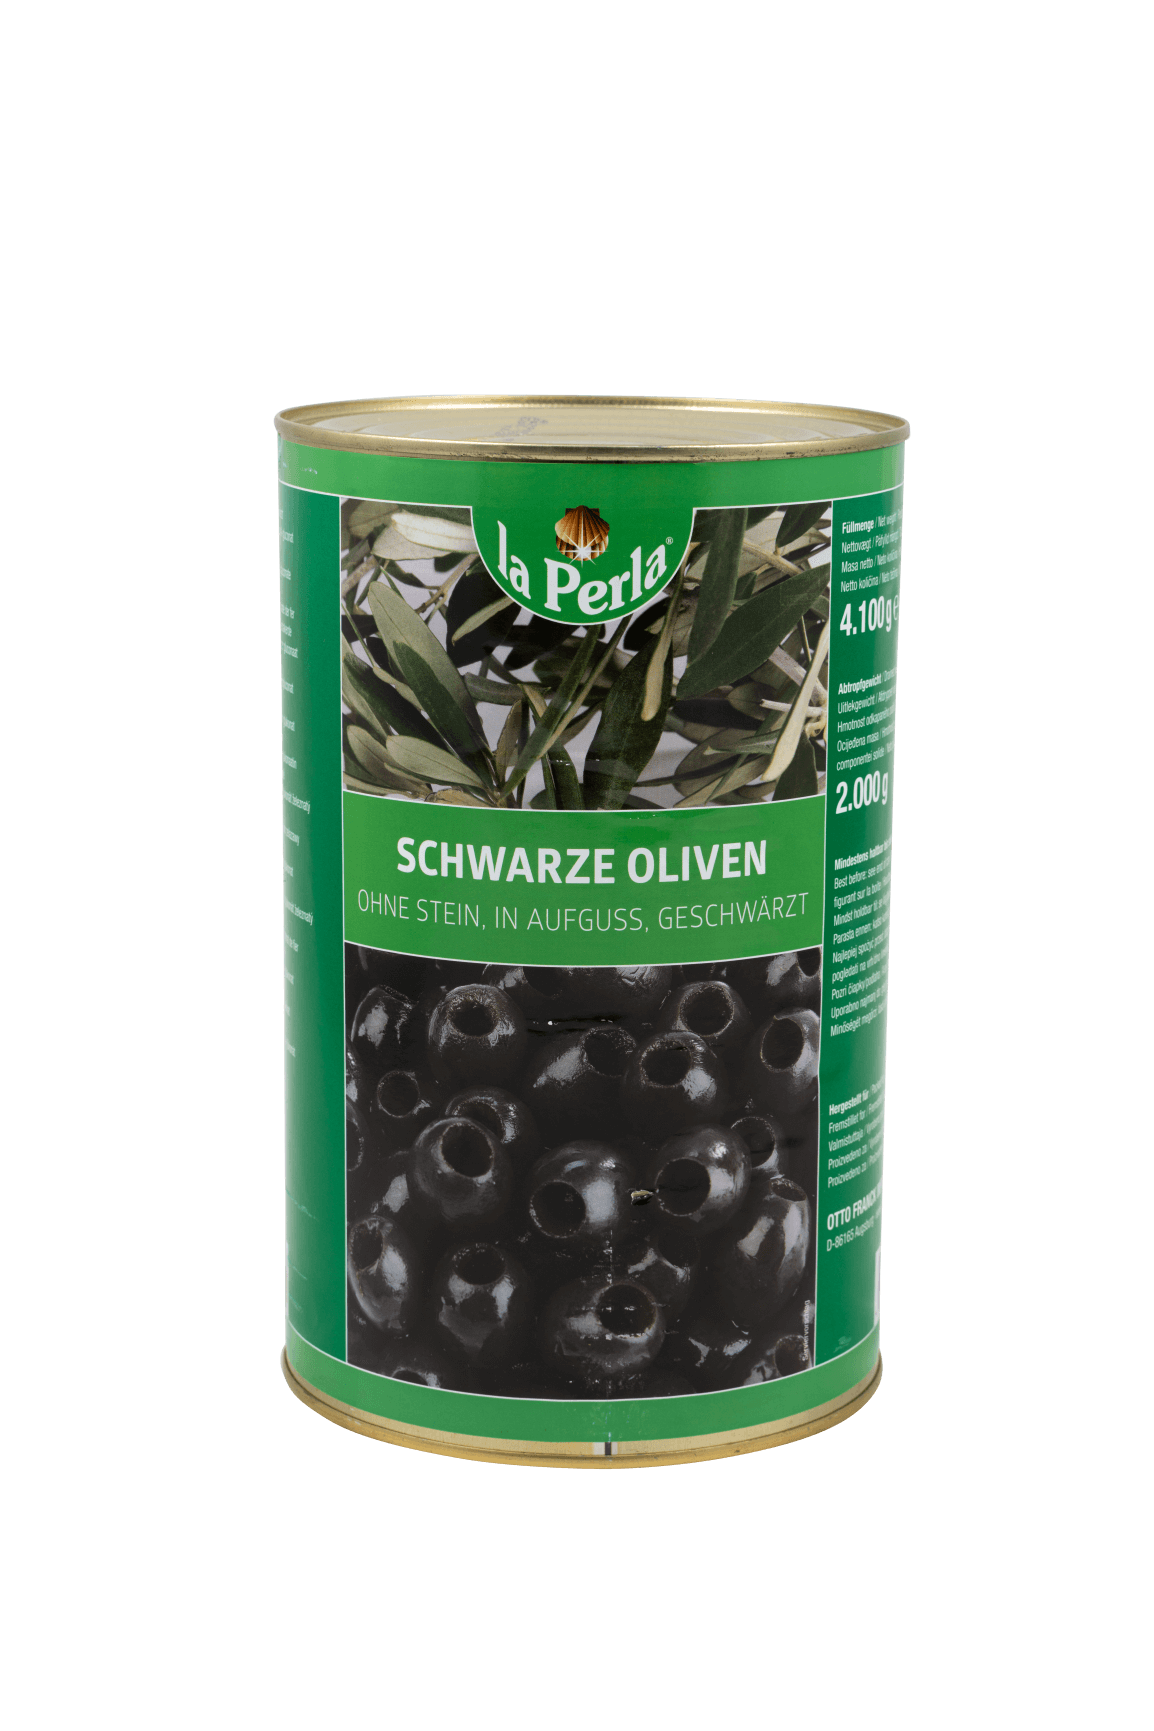 Mustad oliivid ilma kivideta soolvees 4100g/2000g